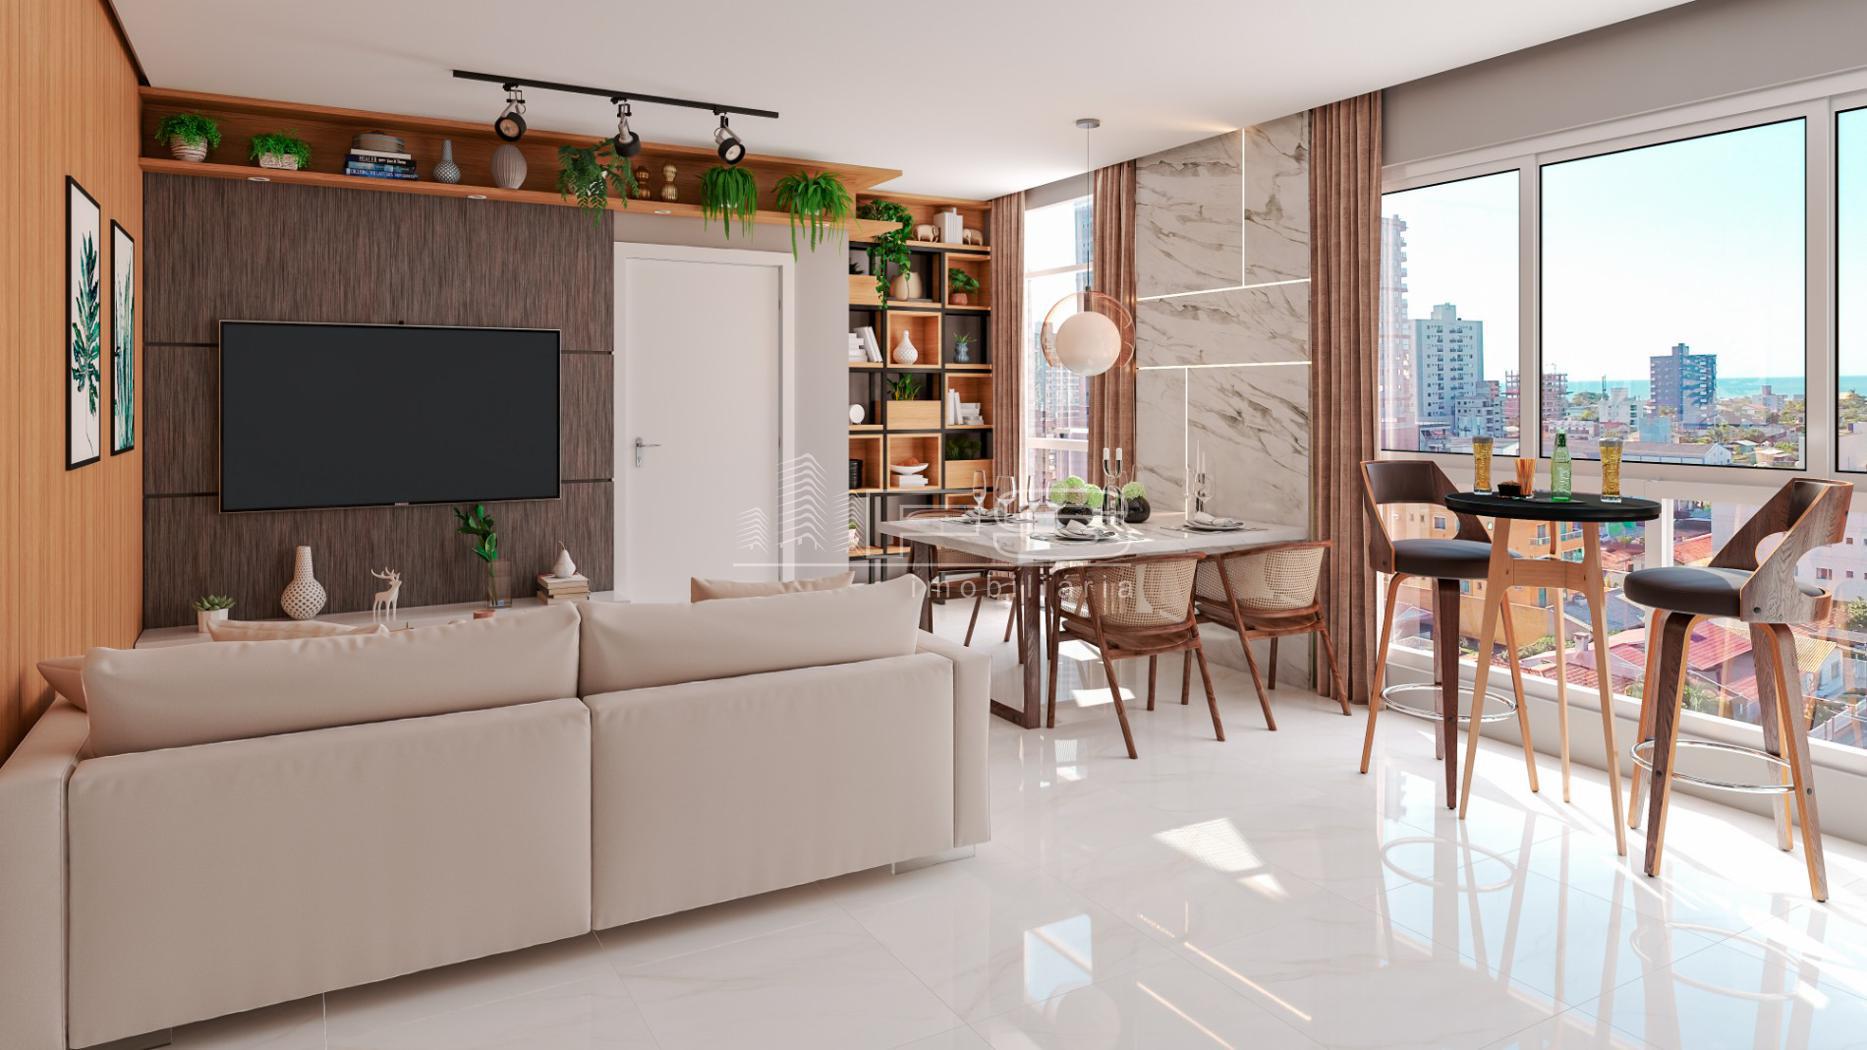 Apartamento com 2 Dormitórios à venda, 102 m² por R$ 630.000,00